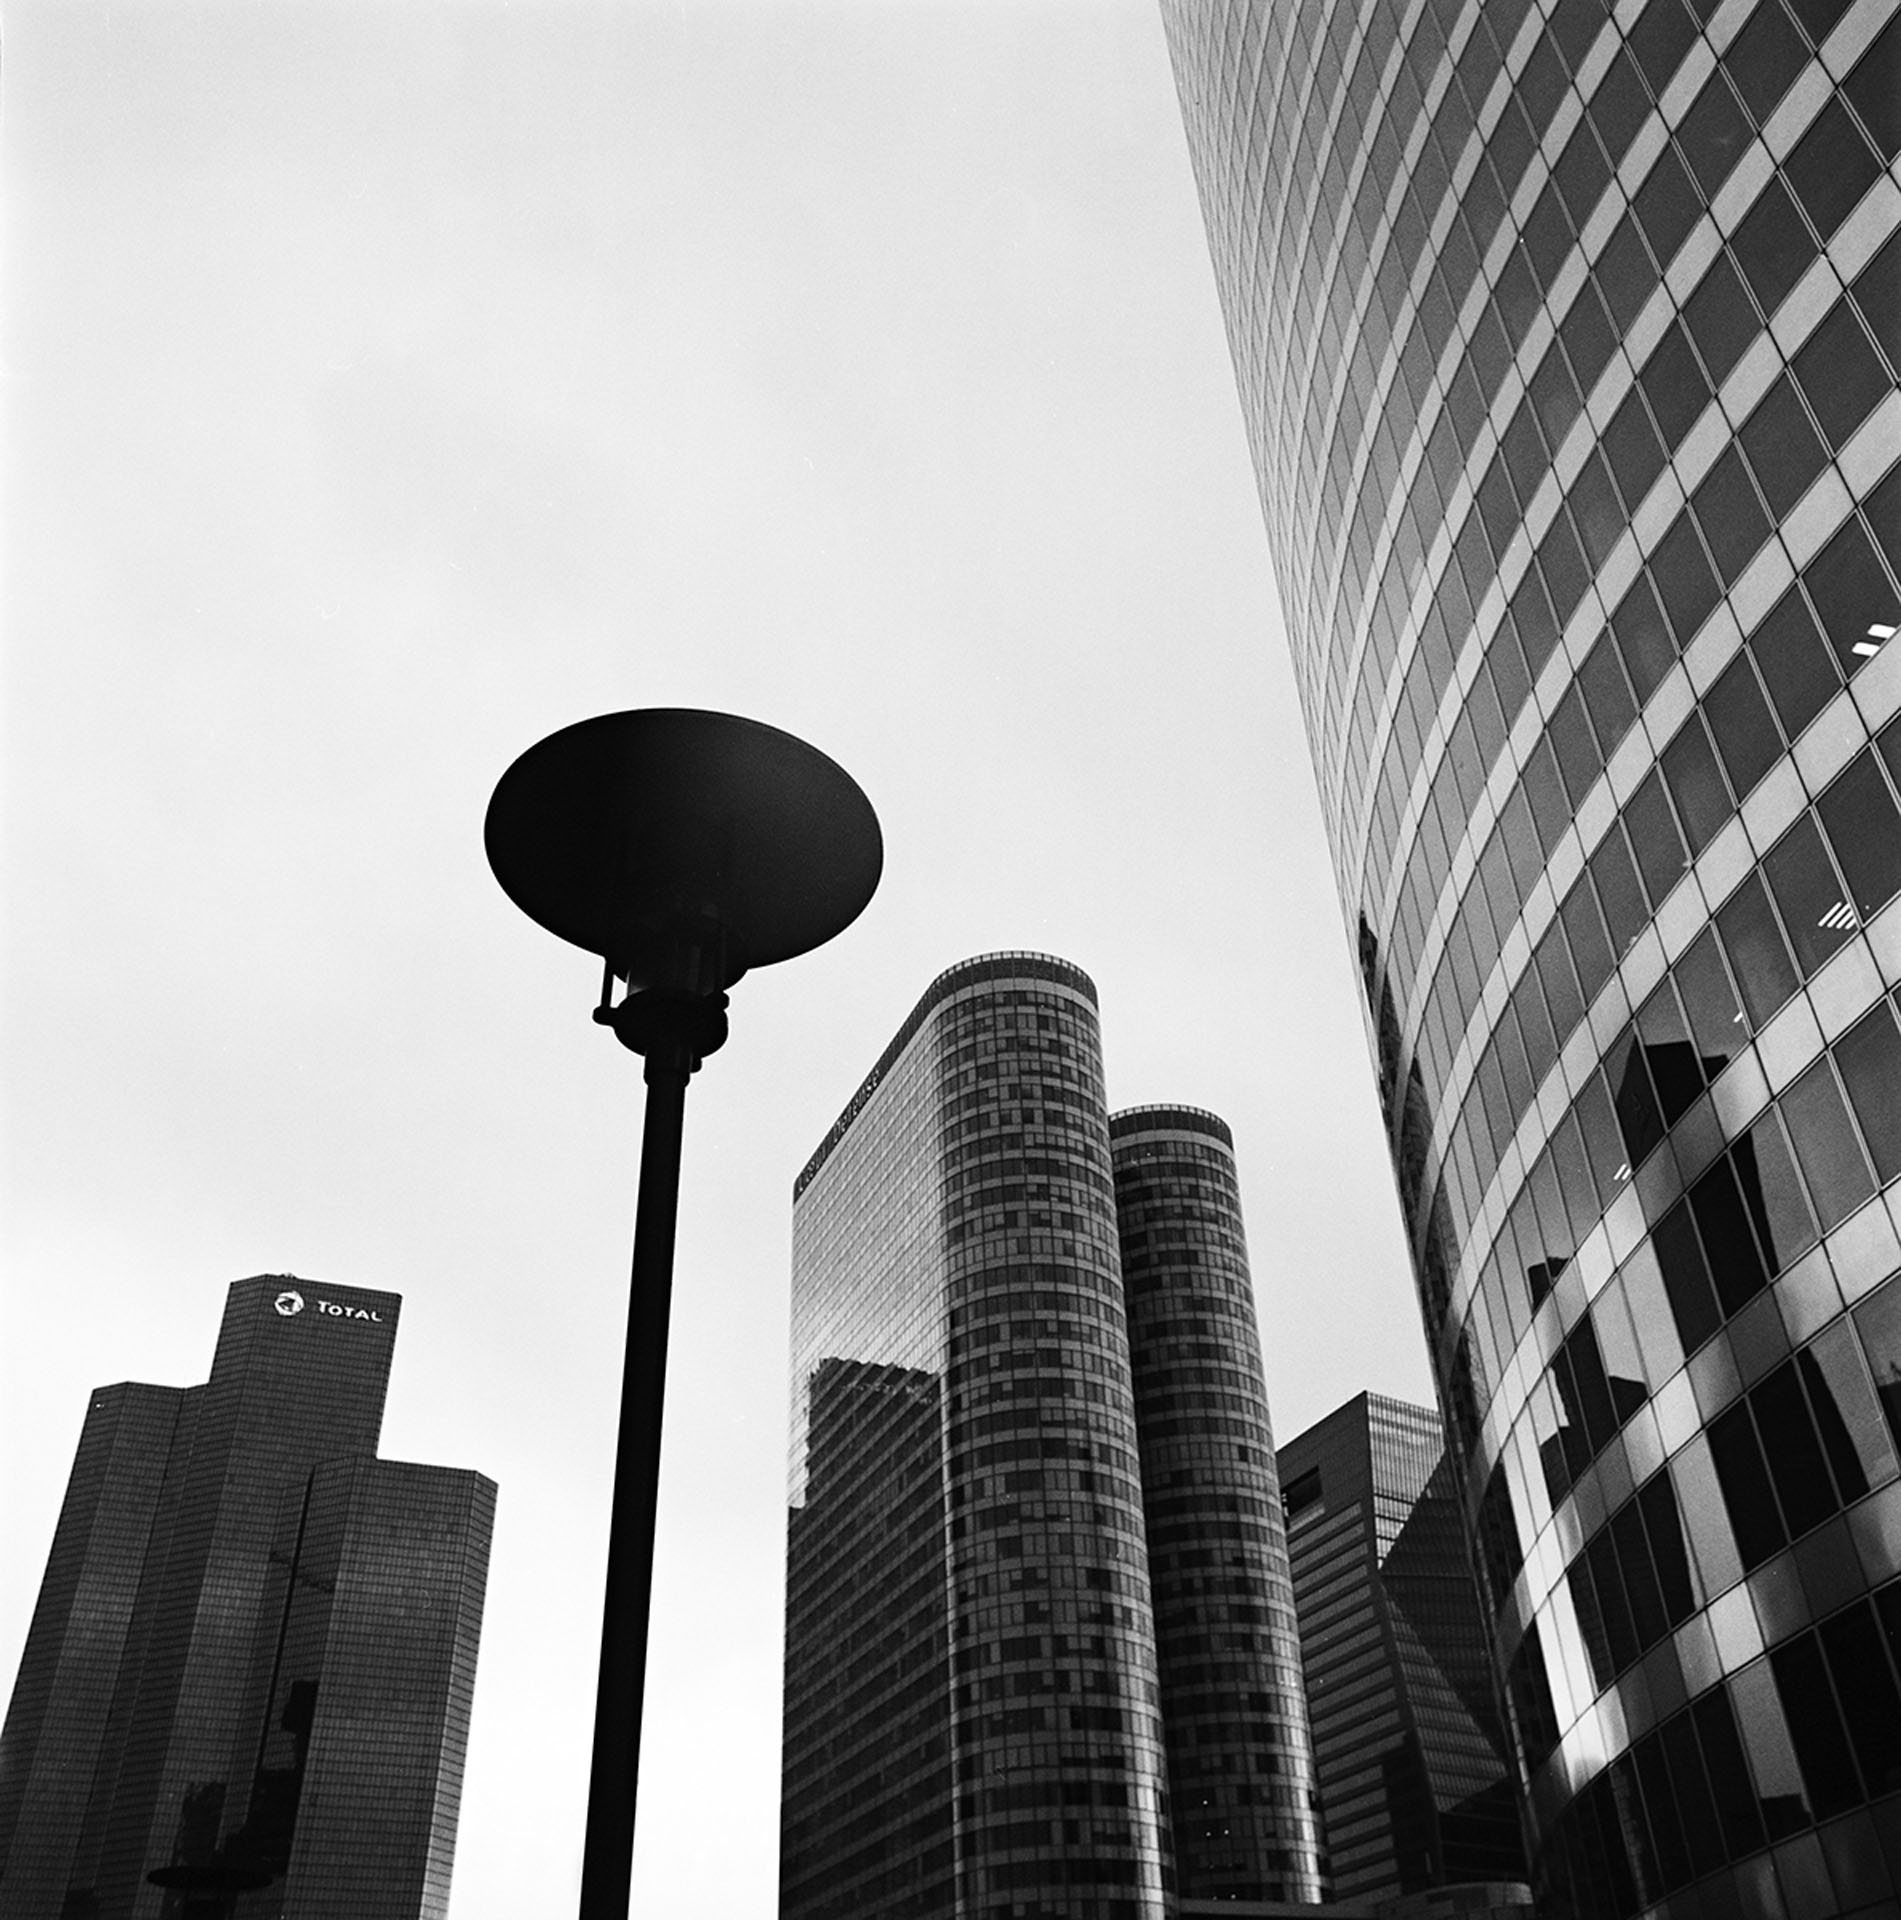 David Hatters photography, La Défense, Paris 2019